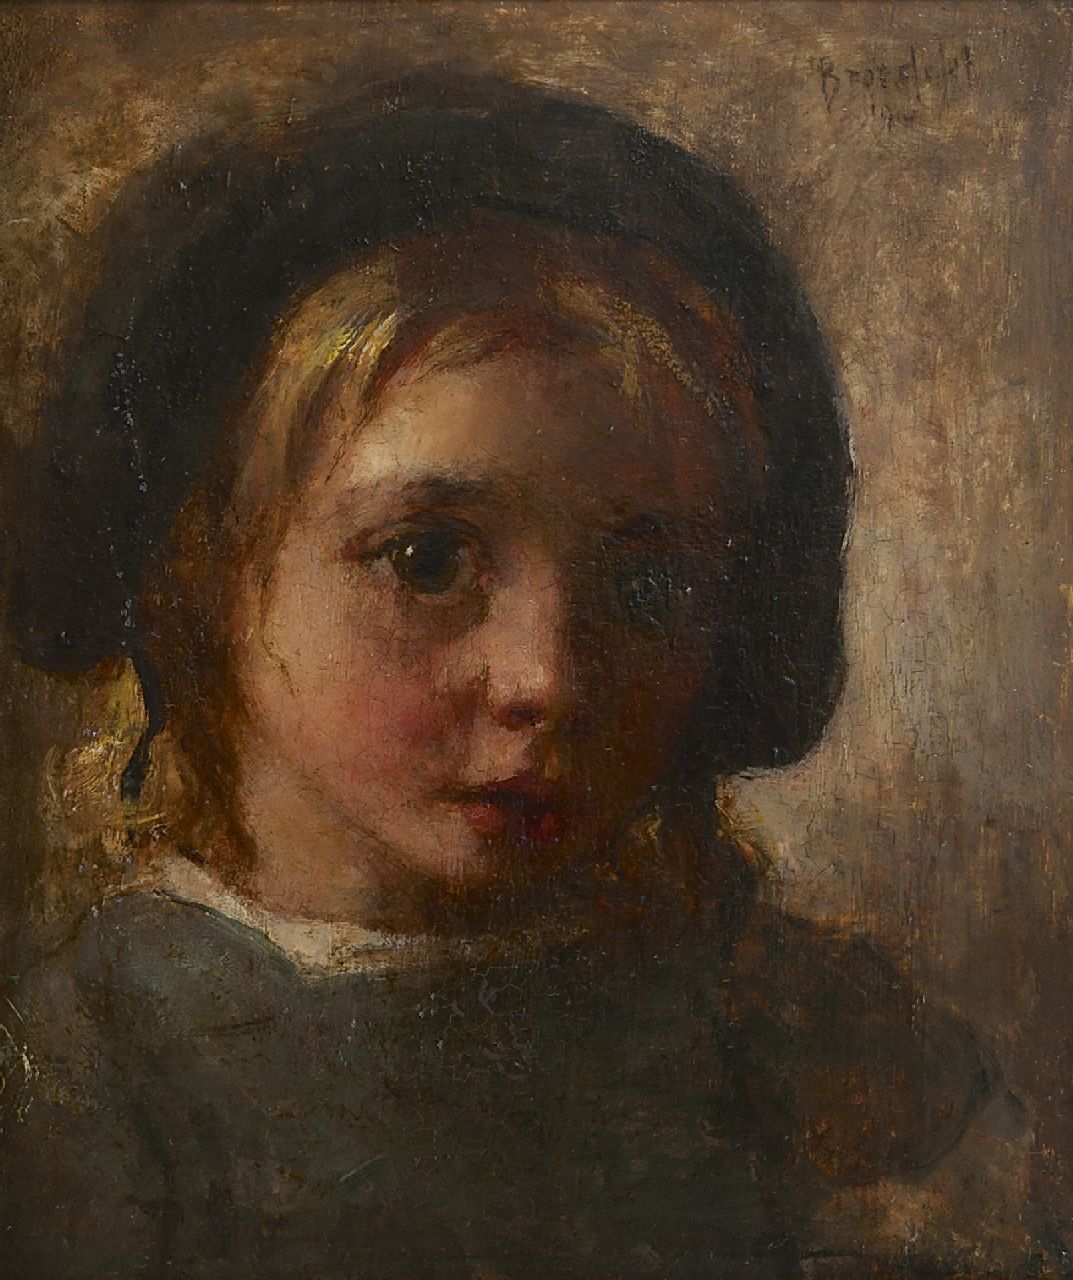 Broedelet A.V.L.  | 'André' Victor Leonard Broedelet, Child portrait, oil on panel 17.8 x 15.1 cm, signed u.r. and dated 1910